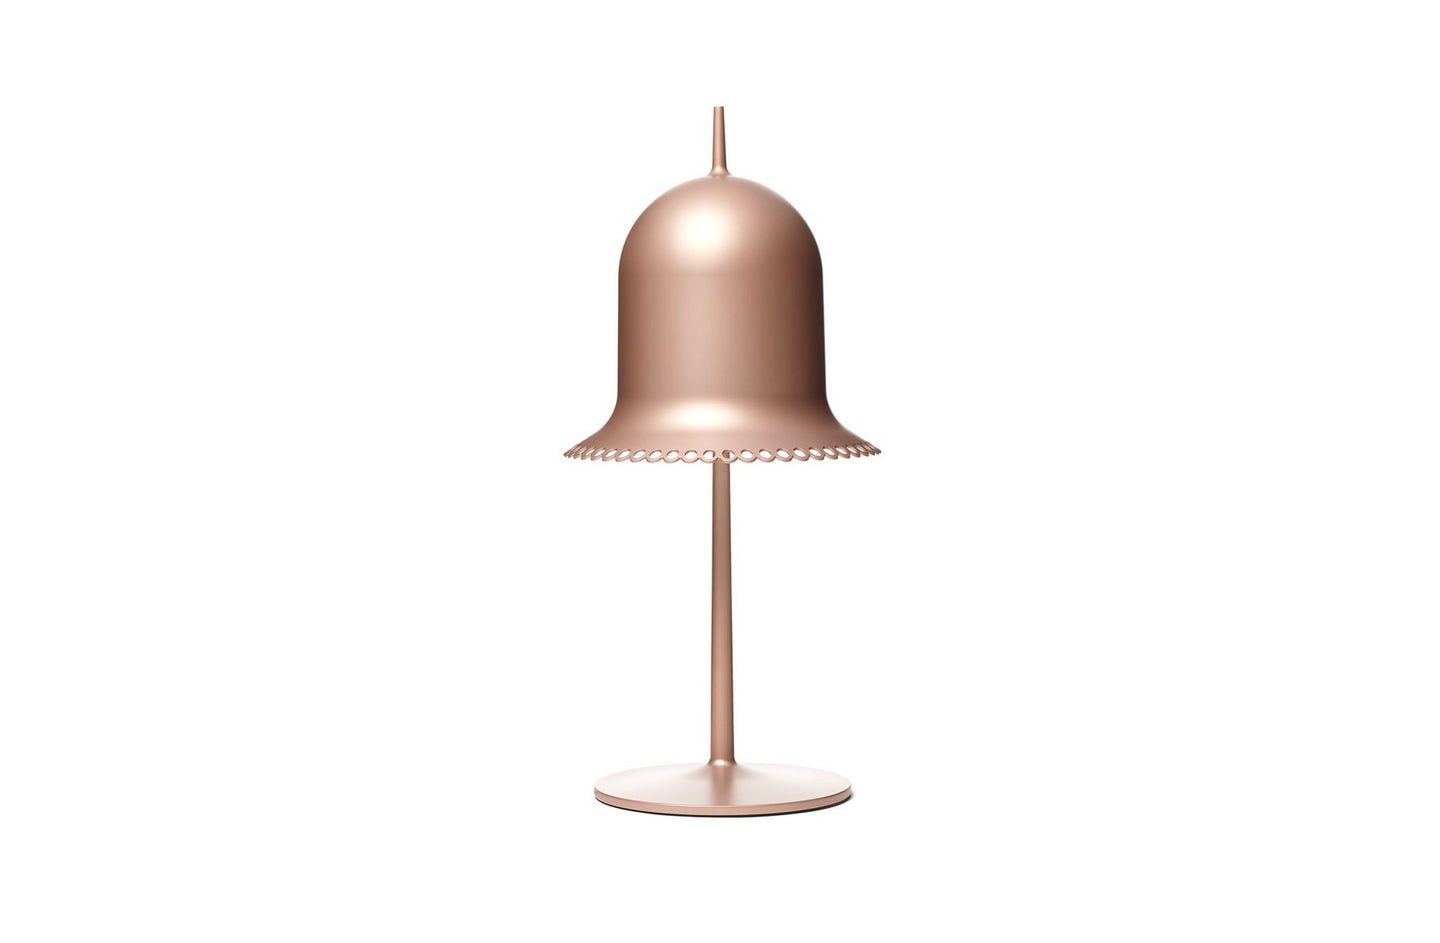 Lolita Table Lamp
